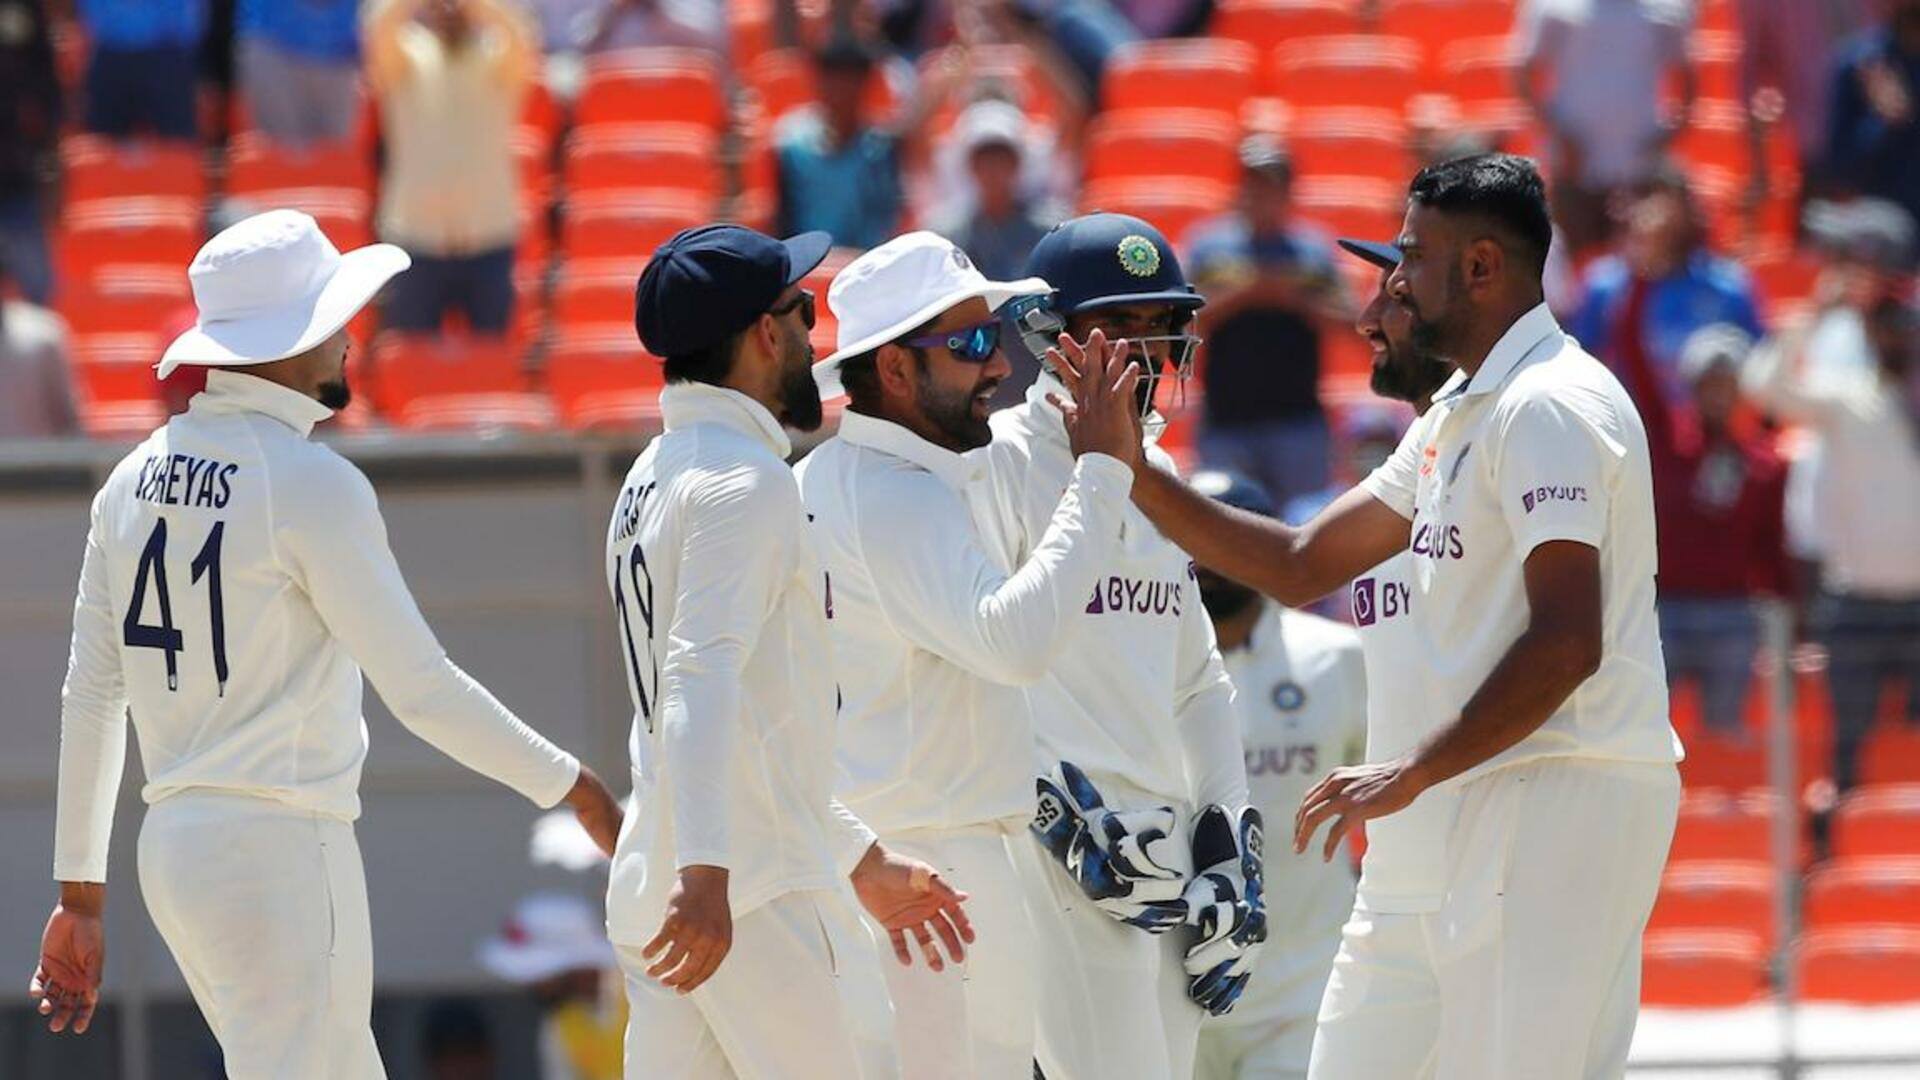 अहमदाबाद टेस्ट: ऑस्ट्रेलिया ने पहली पारी में बनाया बड़ा स्कोर, दूसरे दिन बने कई रिकॉर्ड्स 